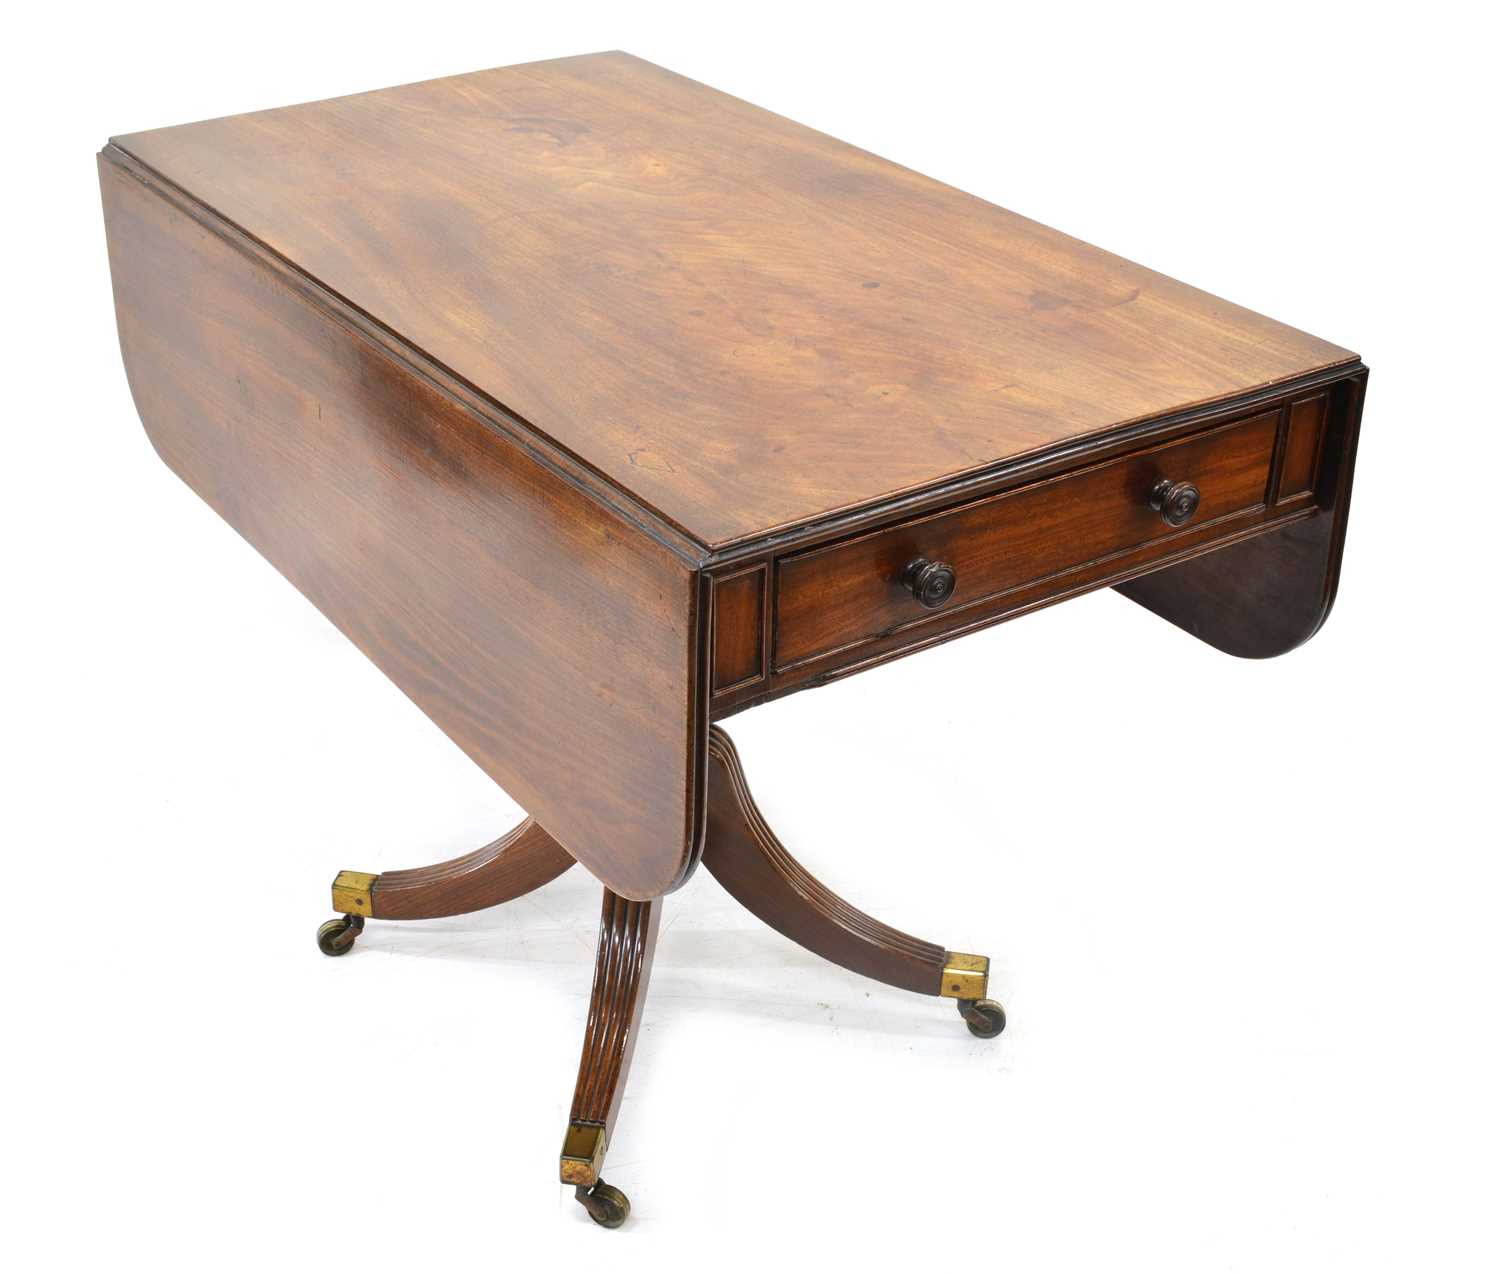 Early 19th-century Mahogany Pembroke Table